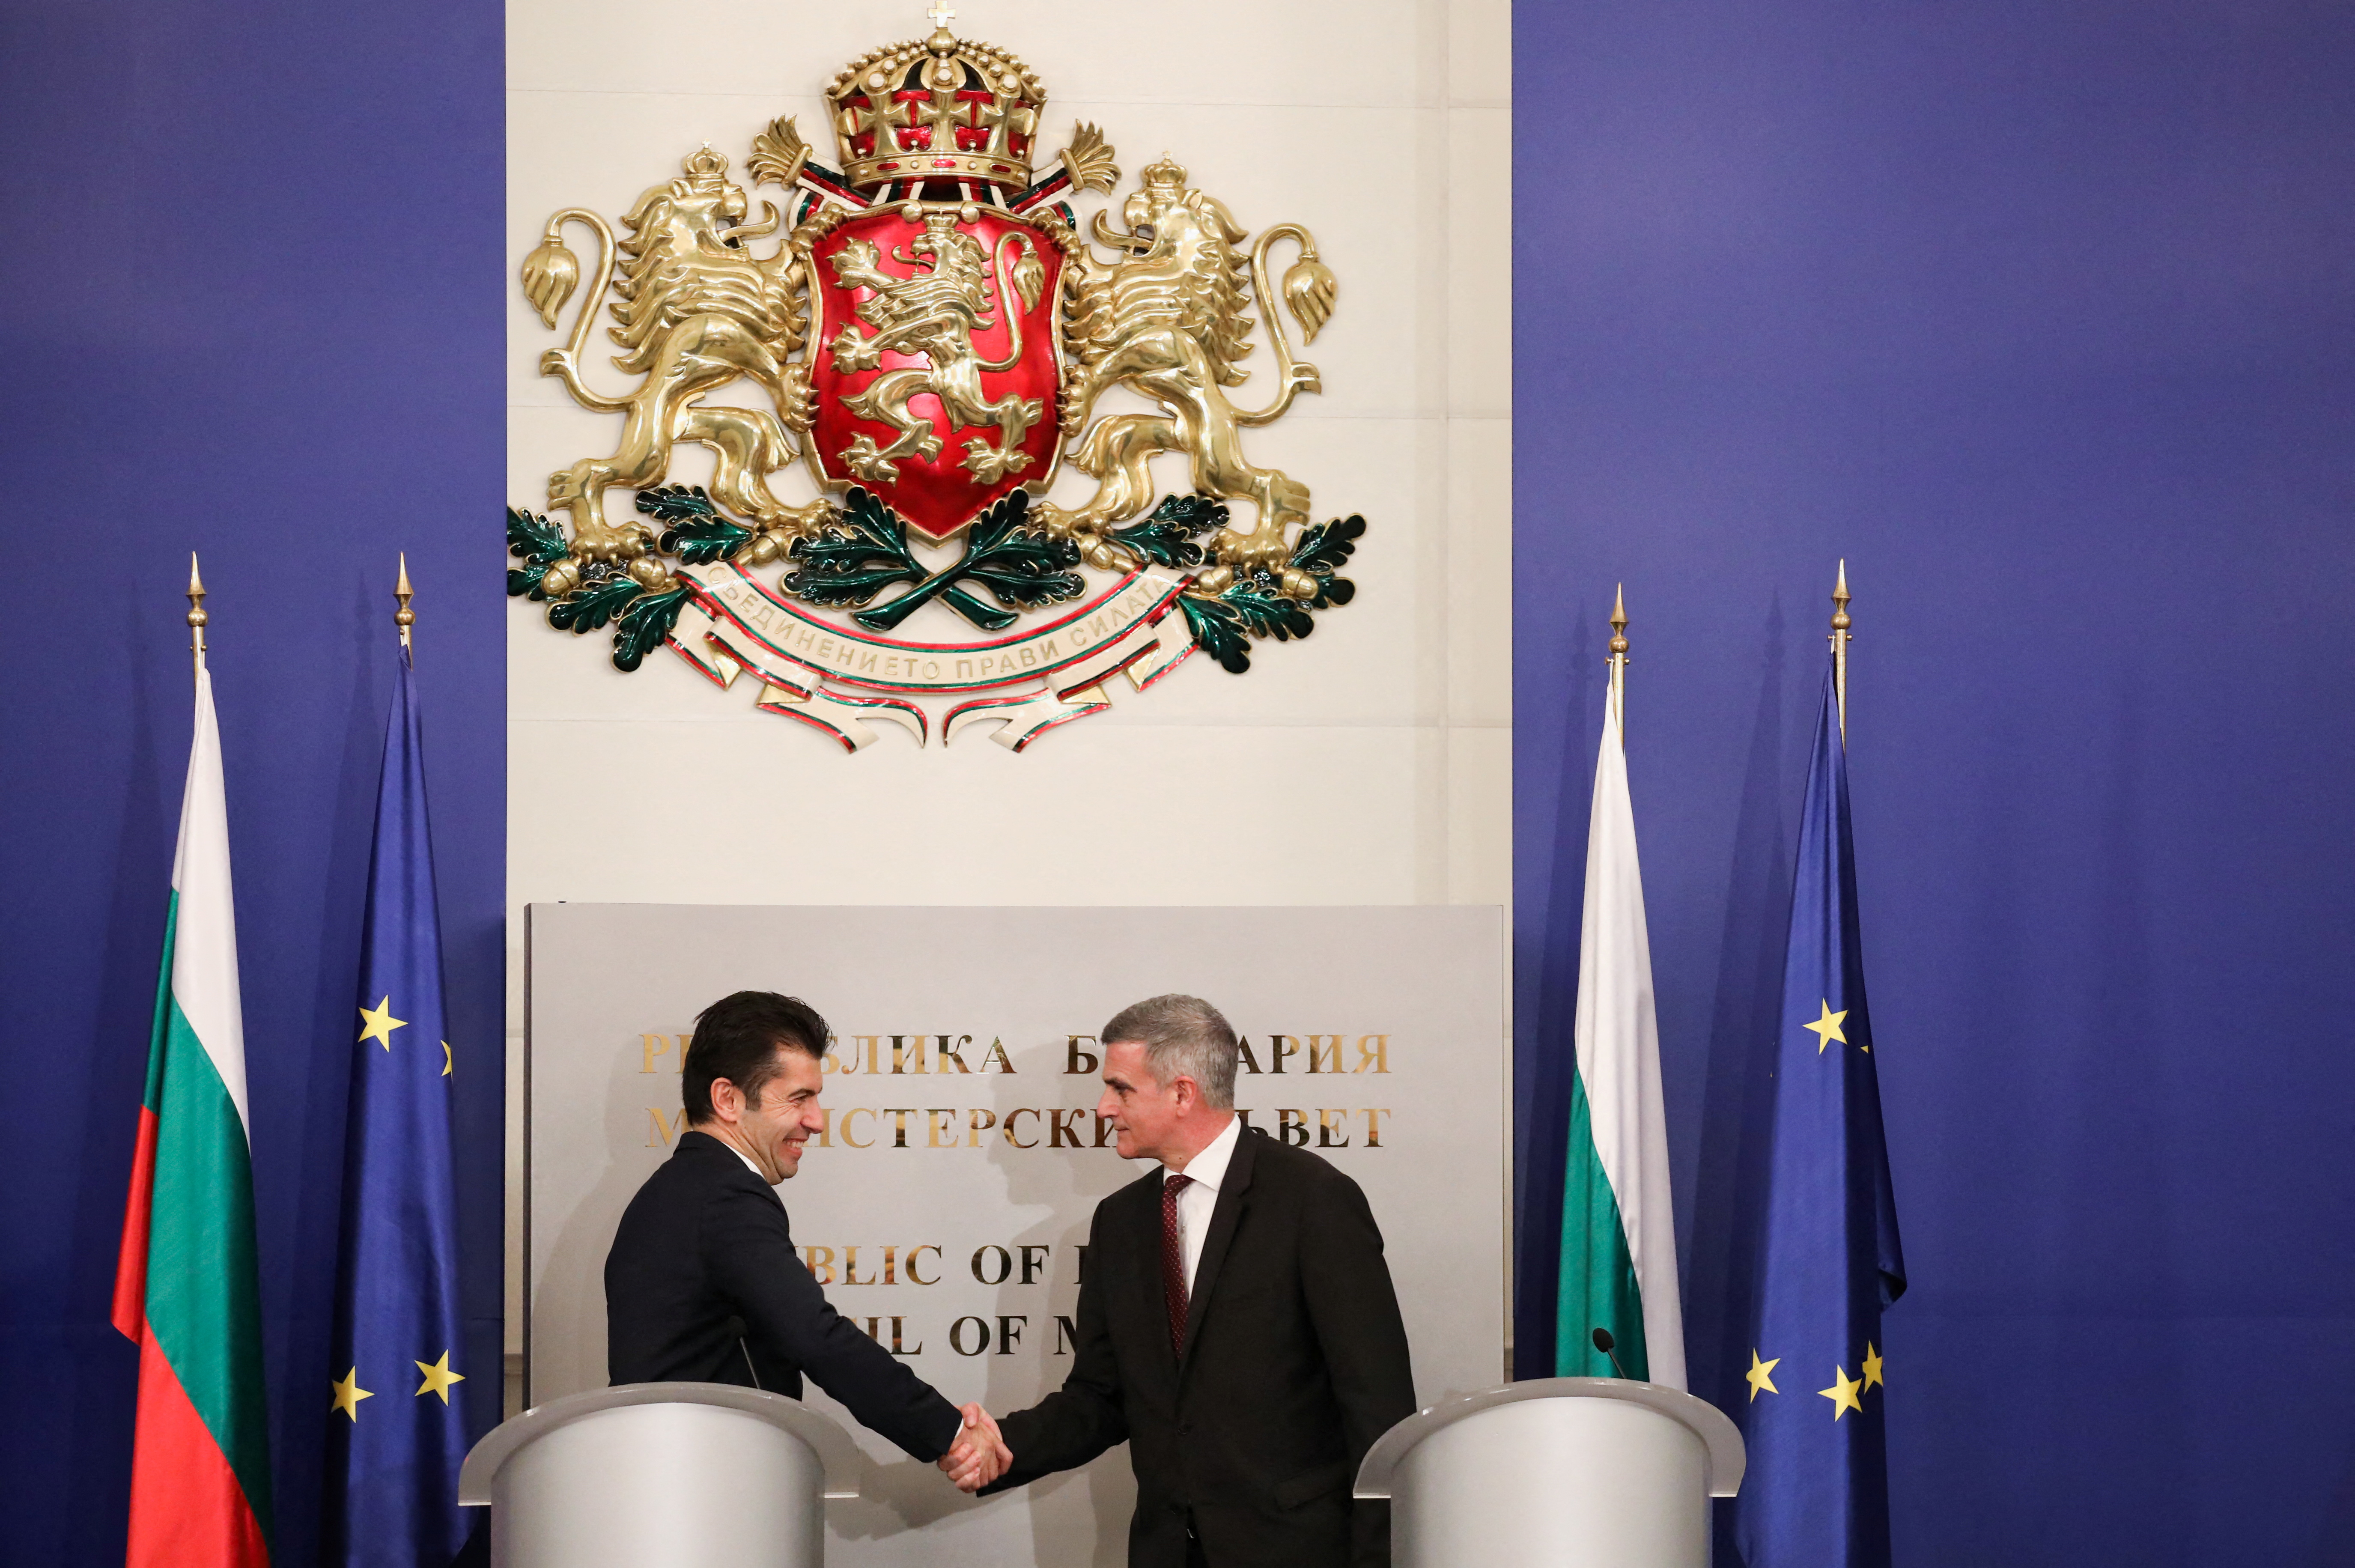 Bulgaria's newly-elected PM Petkov attends handover ceremony in Sofia